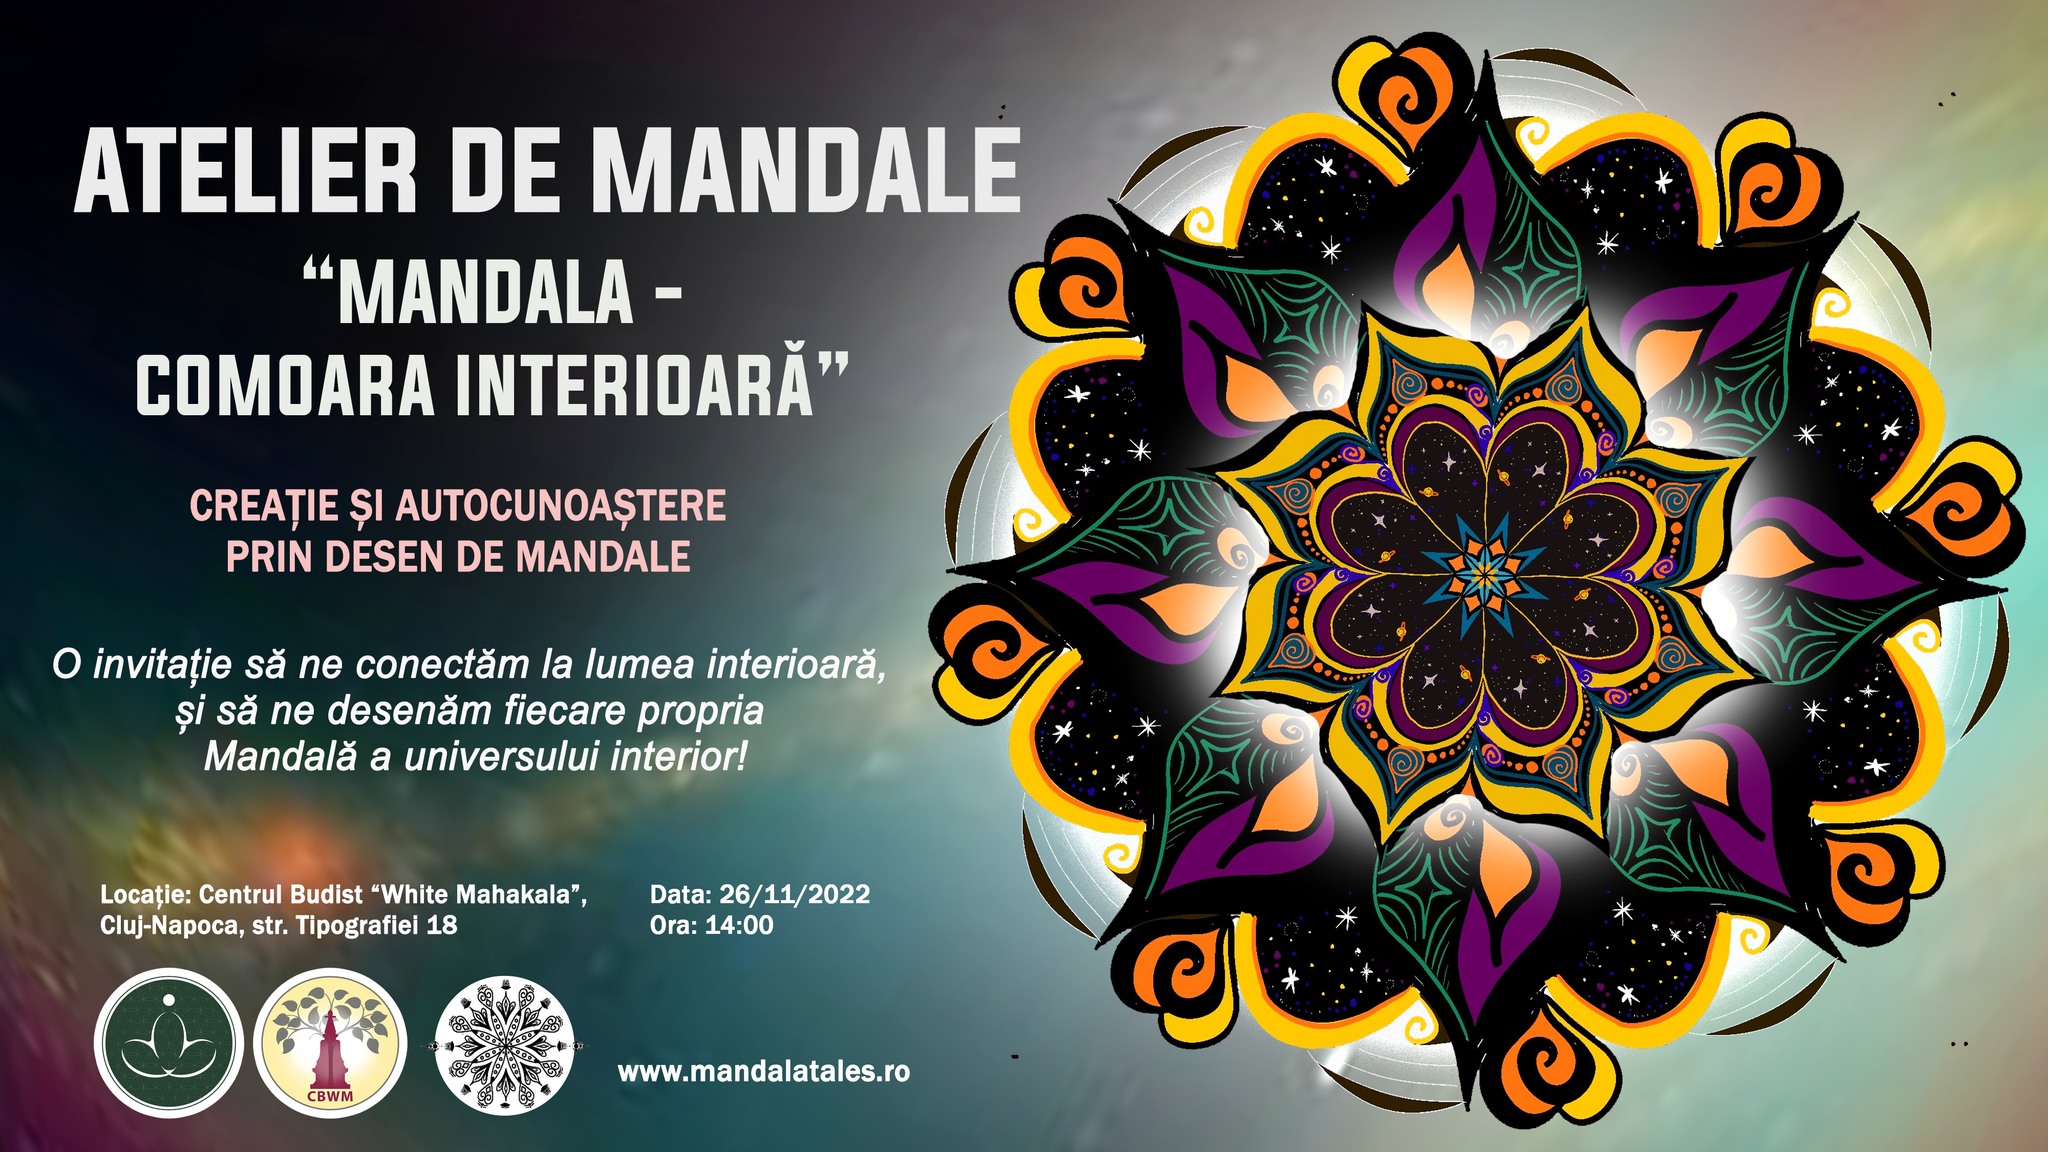 Atelier de Mandale | ”Mandala – Comoara interioară” | Autocunoaștere prin desen de mandale